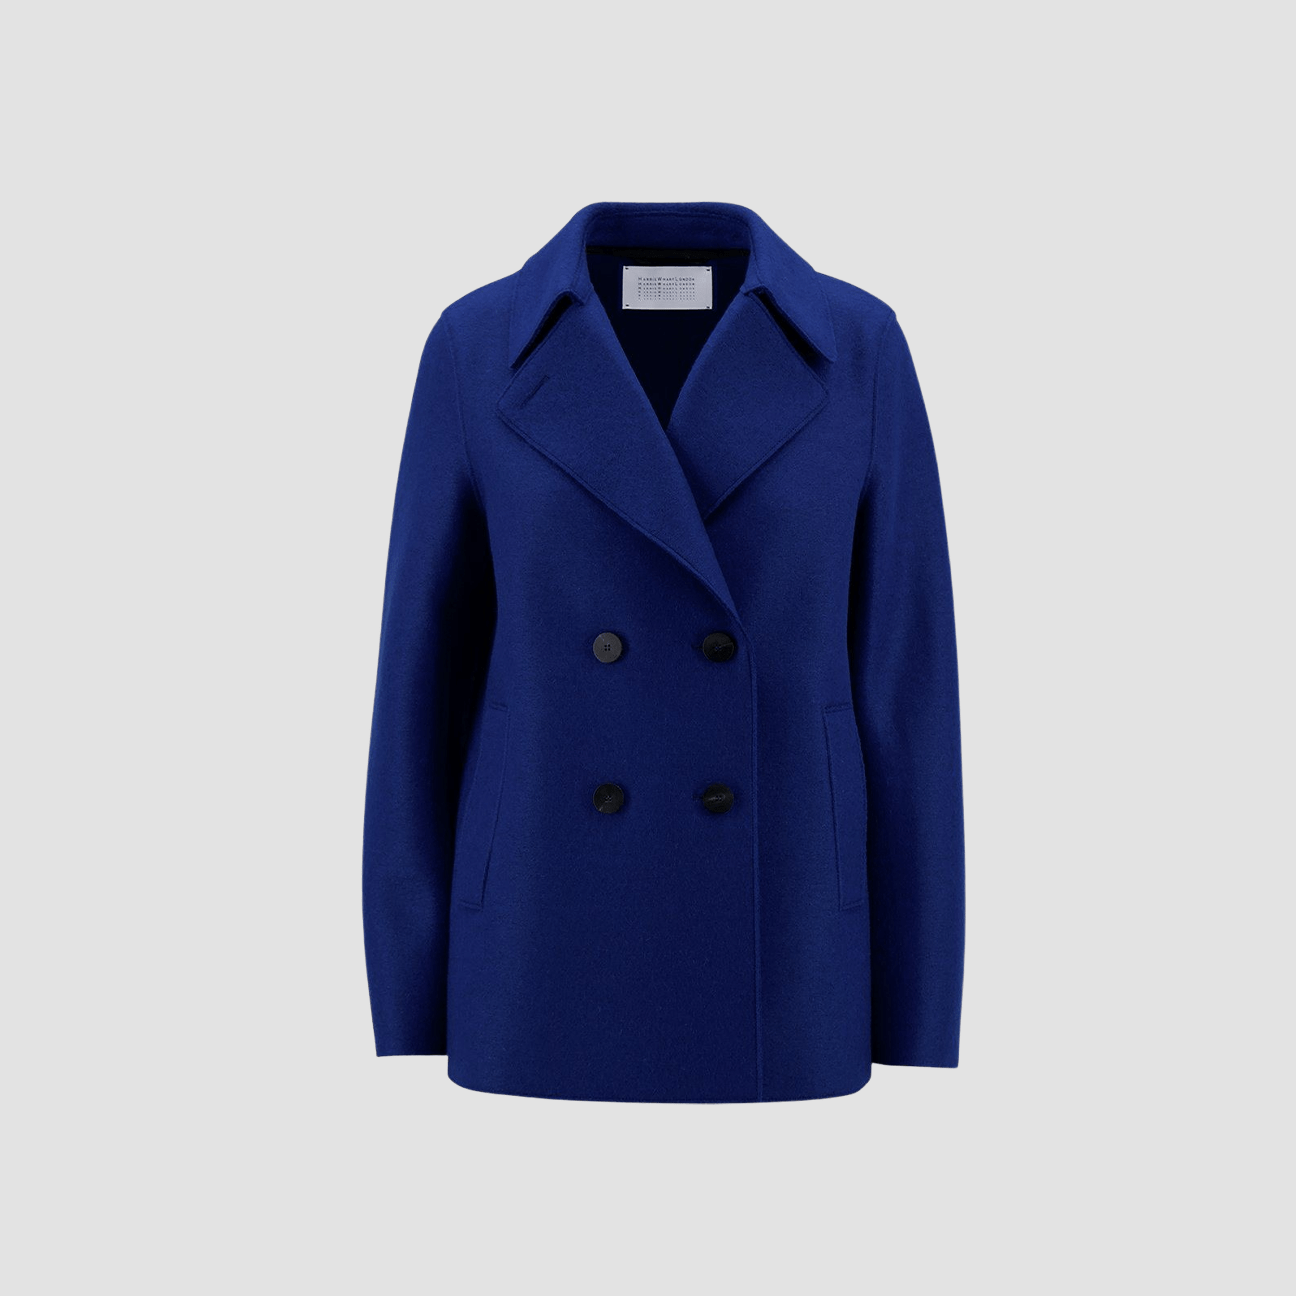 HARRIS WHARF LONDON Cappotto corto doppiopetto Royal Blue